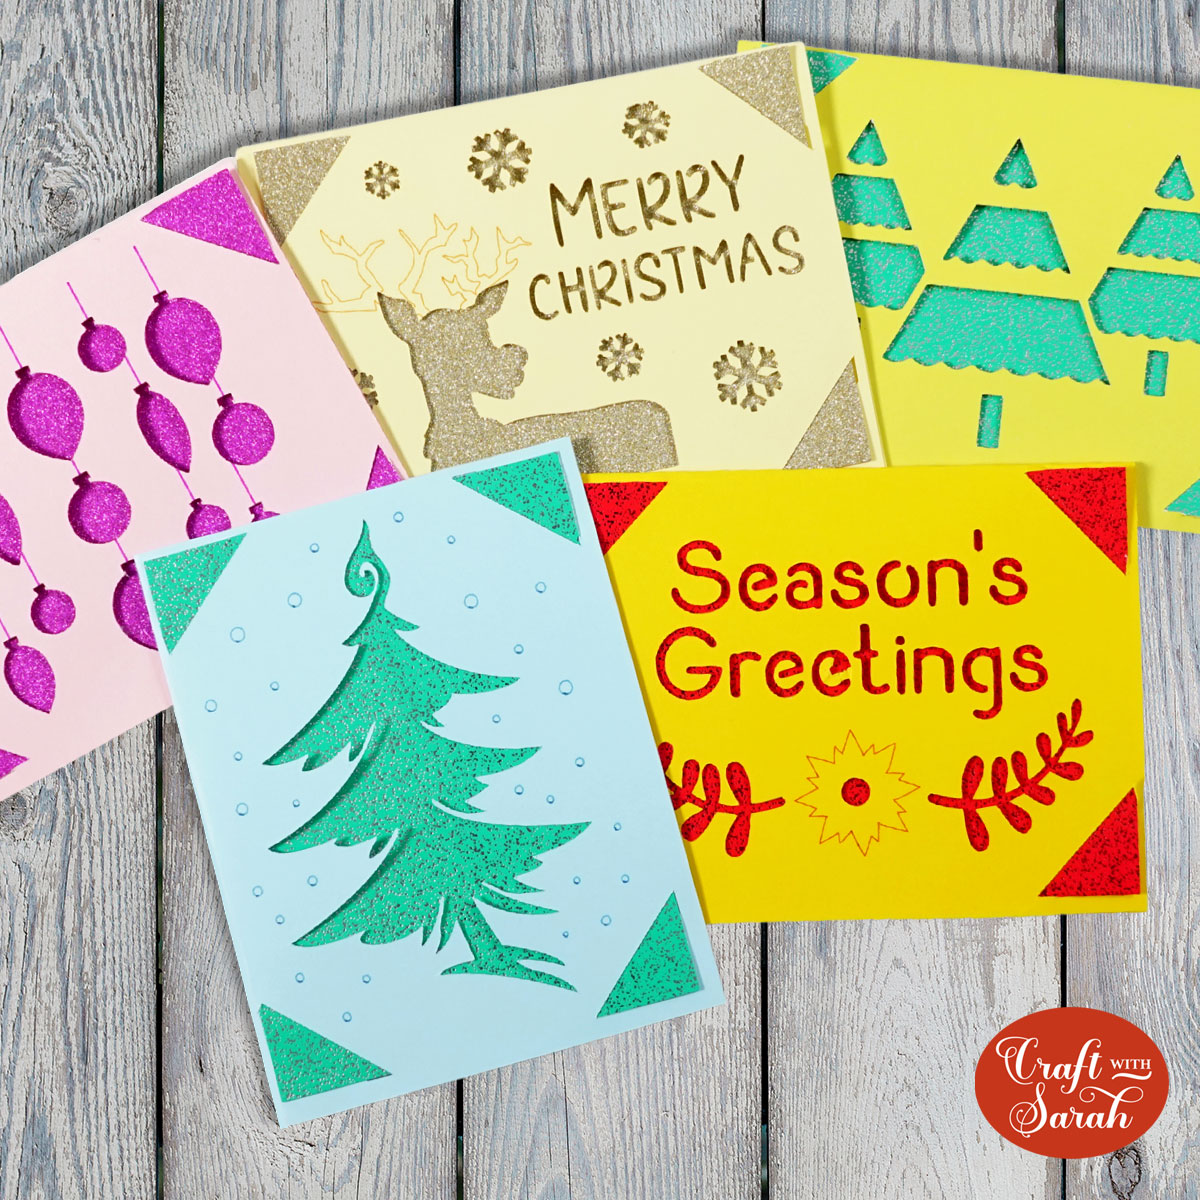 Christmas Cricut Joy cards